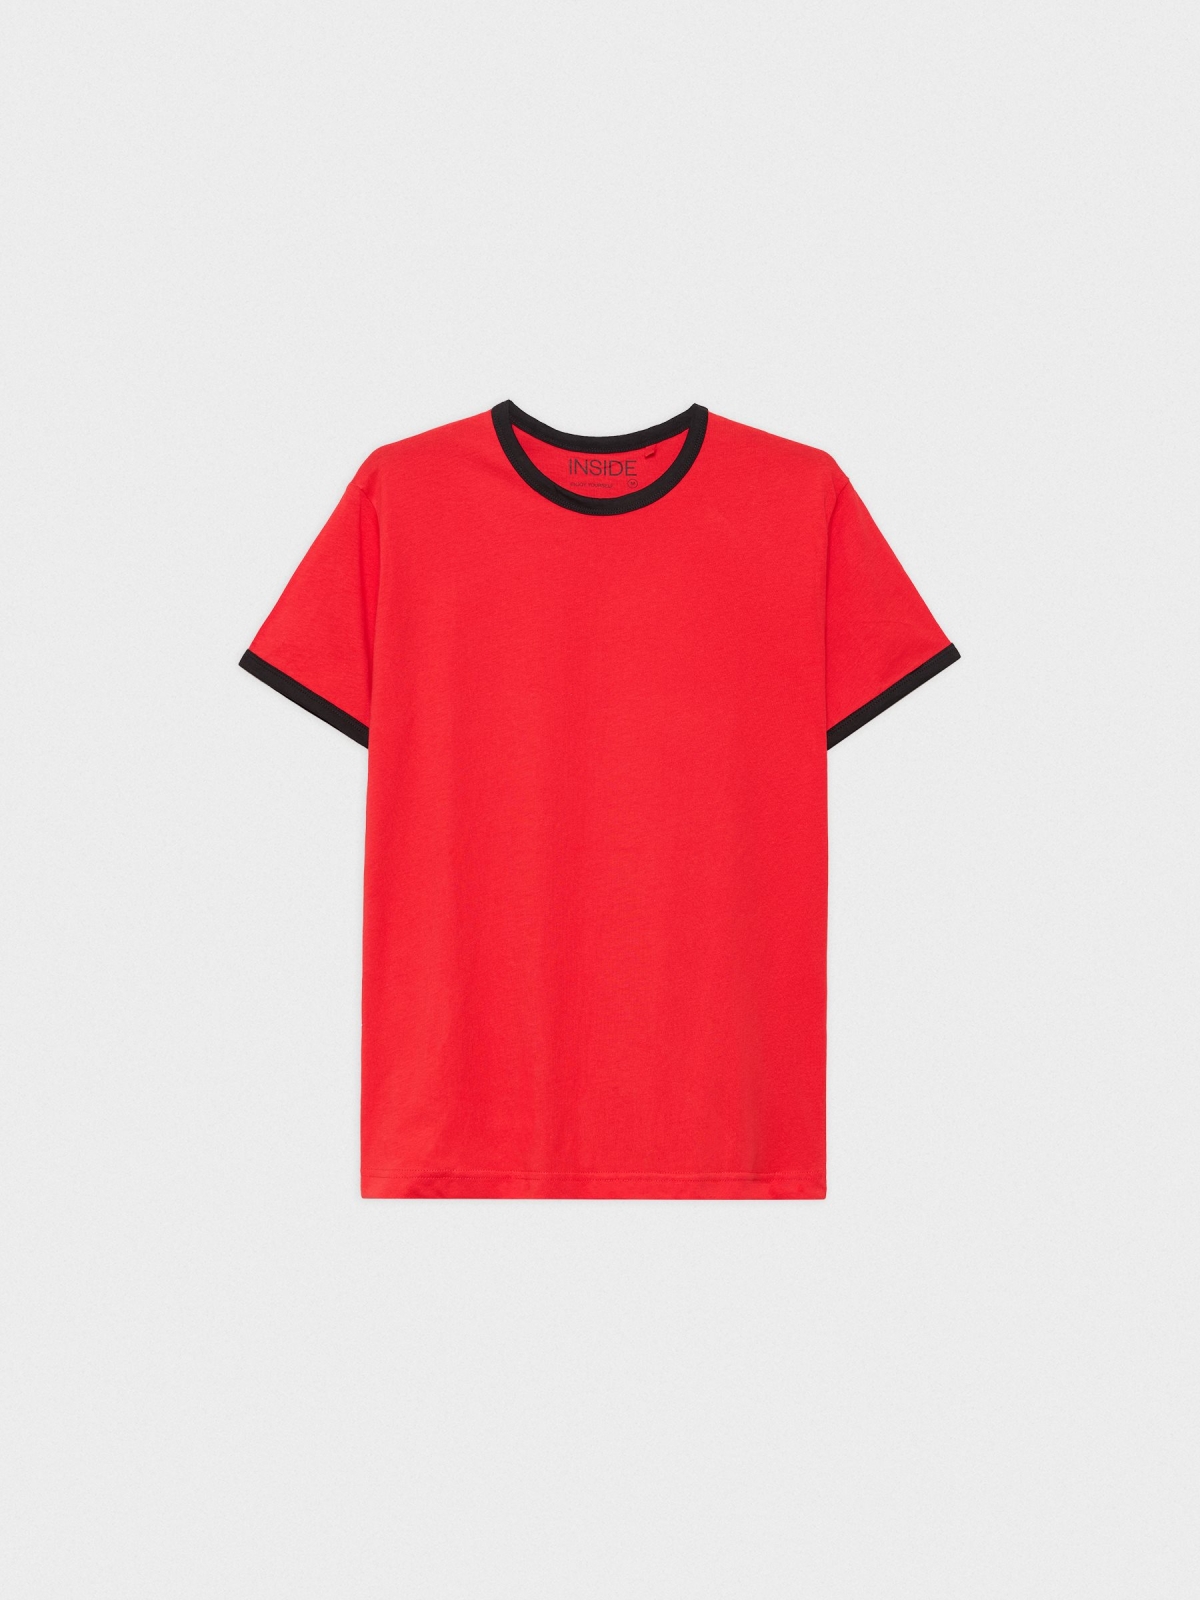  Camiseta básica contrastes rojo